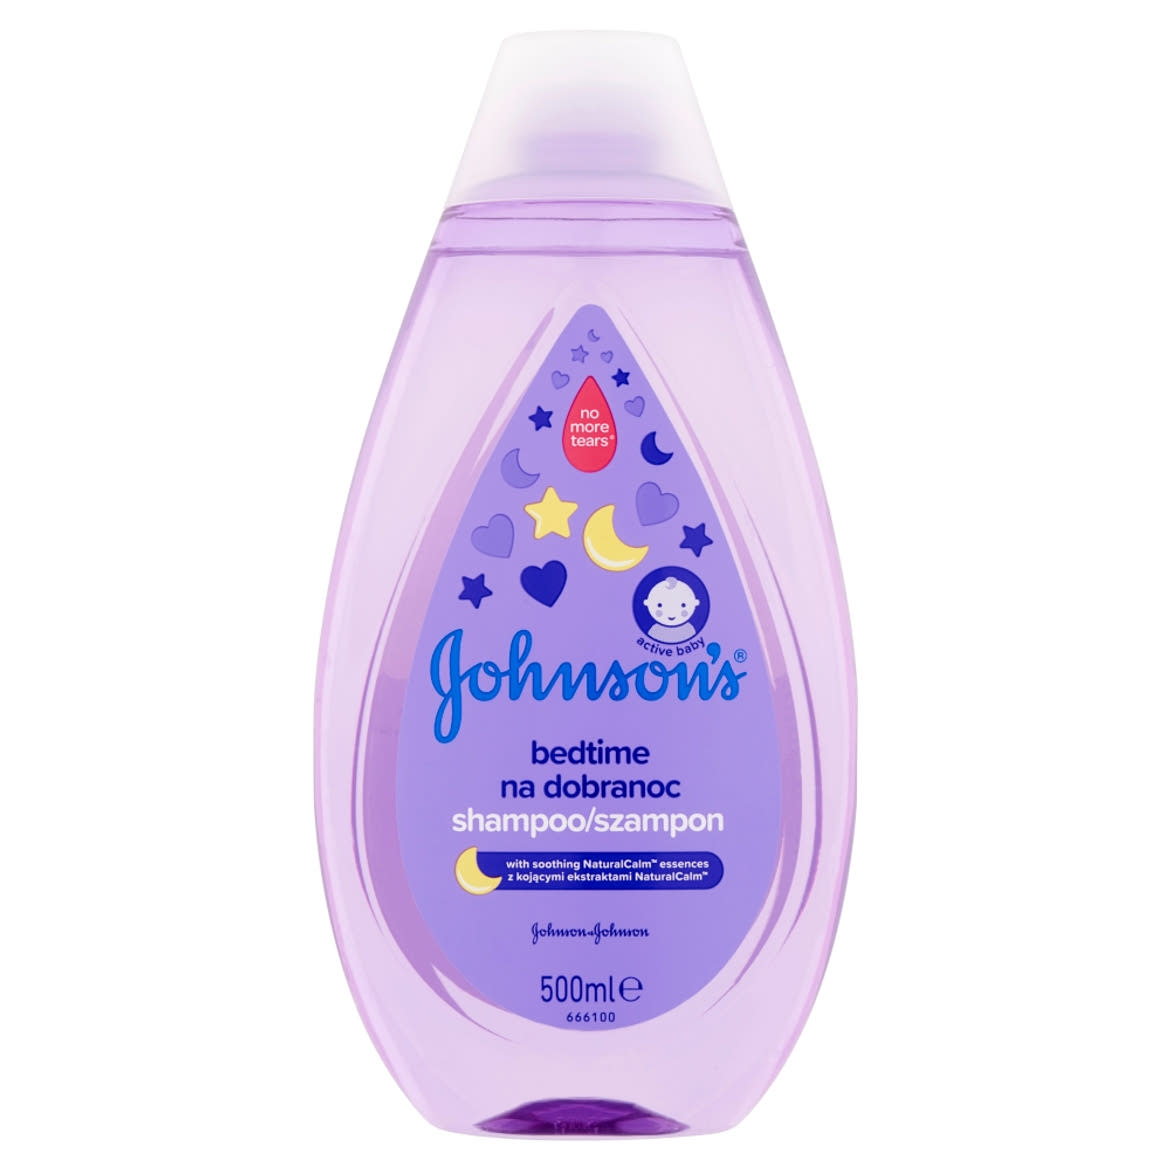 Johnson's Bedtime babasampon